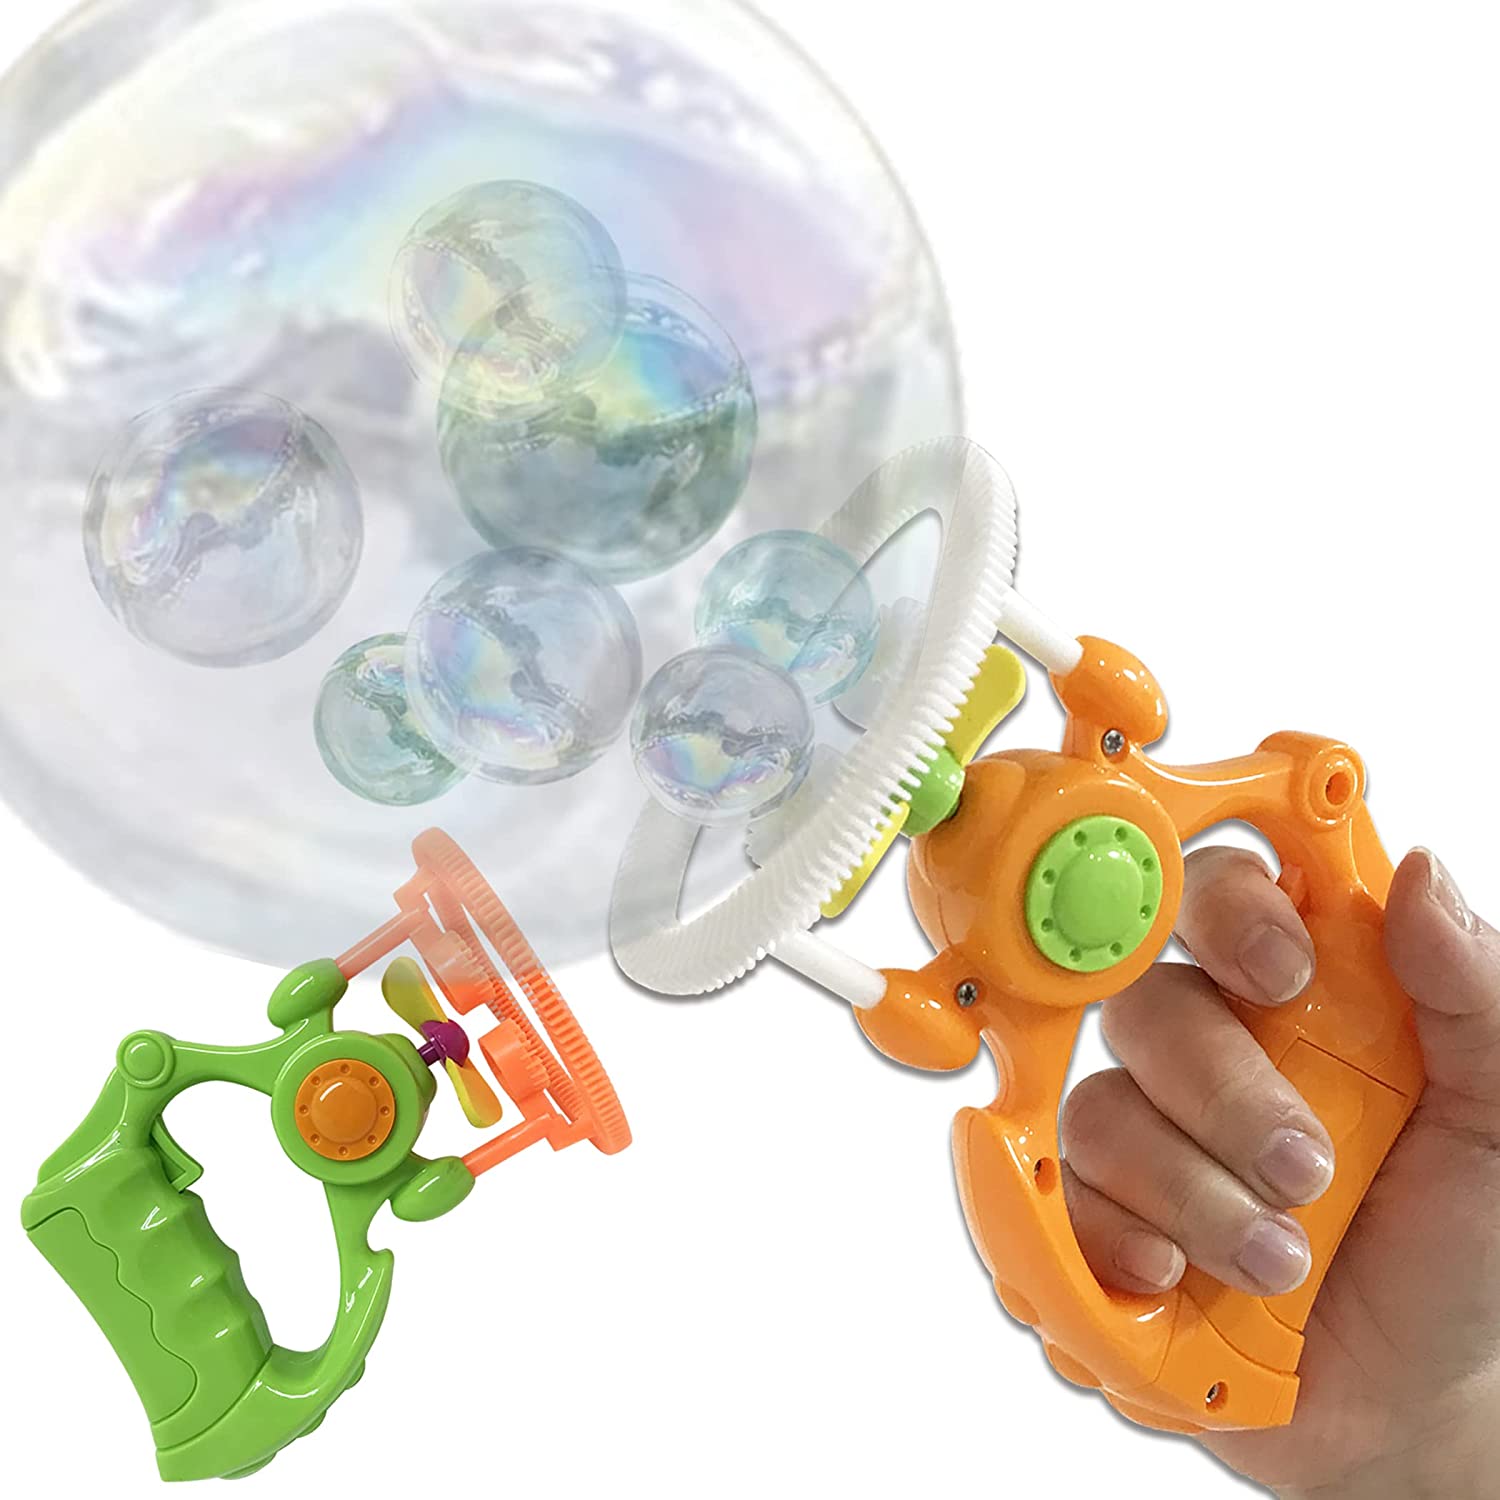 【バブルガン2個セット】 シャボン玉 バブル 電動式 バブルマシーン しゃぼん液 外遊び おもちゃ 子供 アウトドア プレゼント